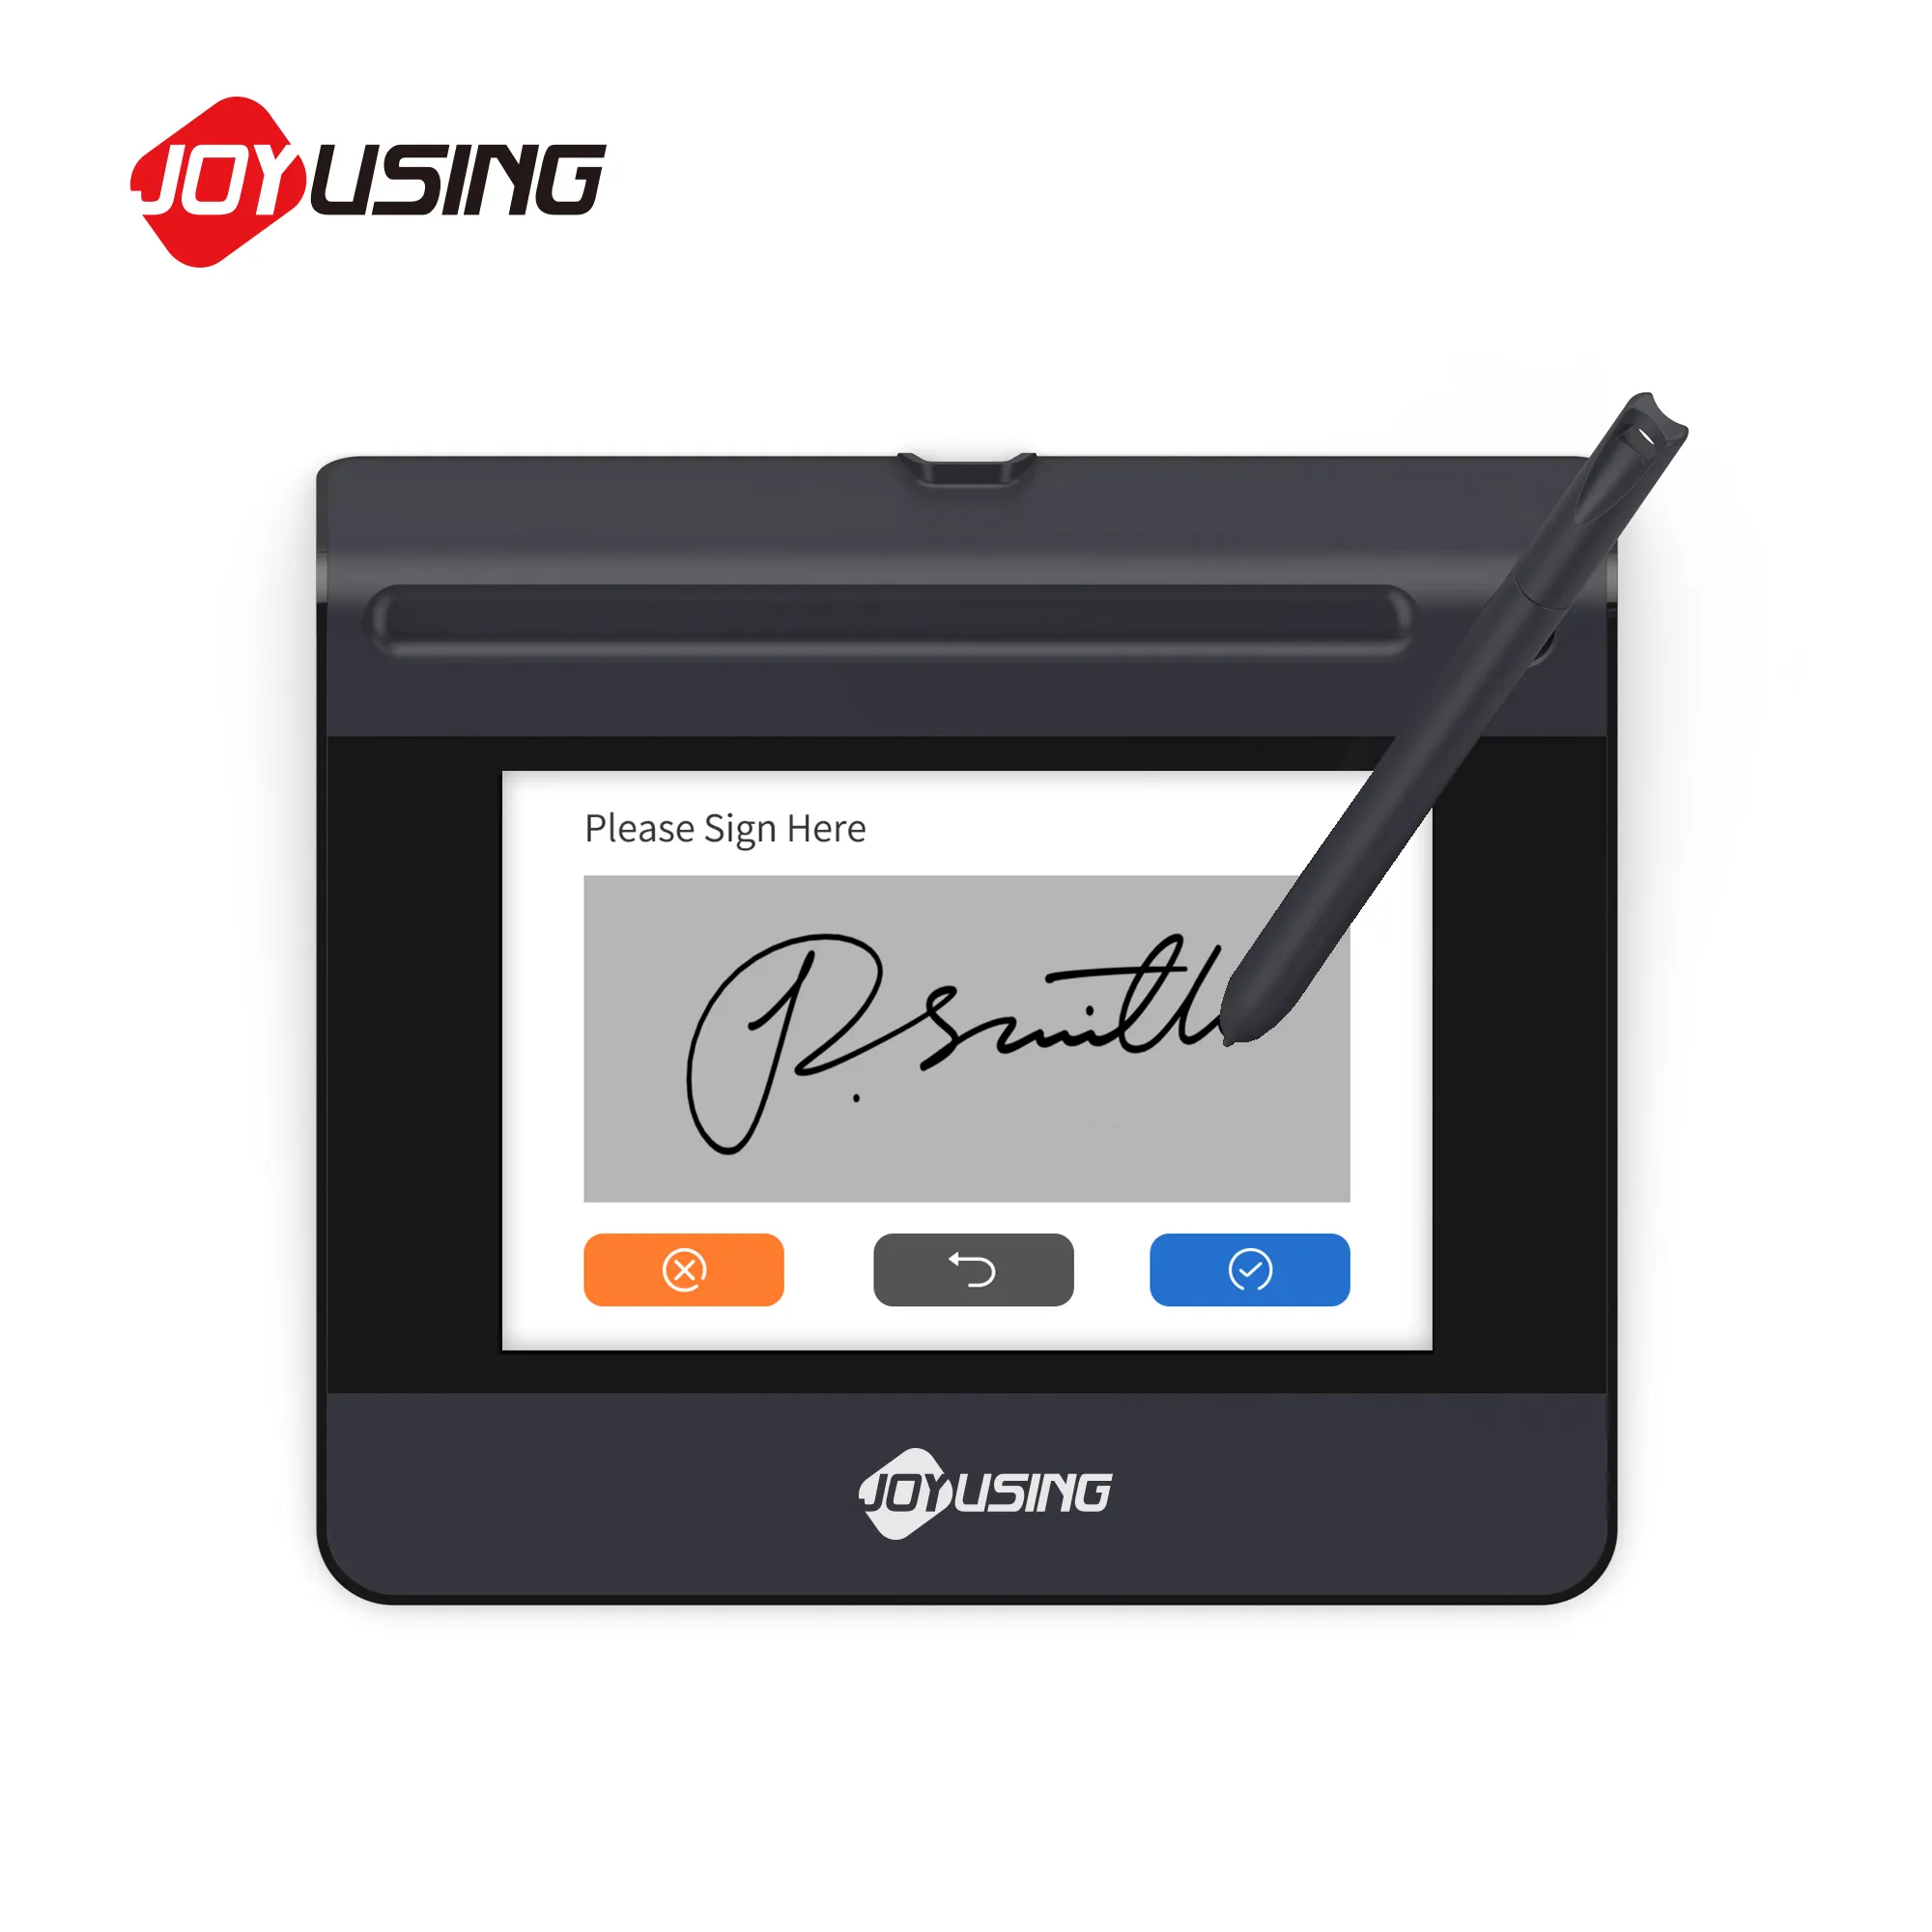 Almohadilla de firma electrónica Joyusing Sp550, almohadilla de escritura barata OEM avanzada con bolígrafo para verificación de identidad multiusos